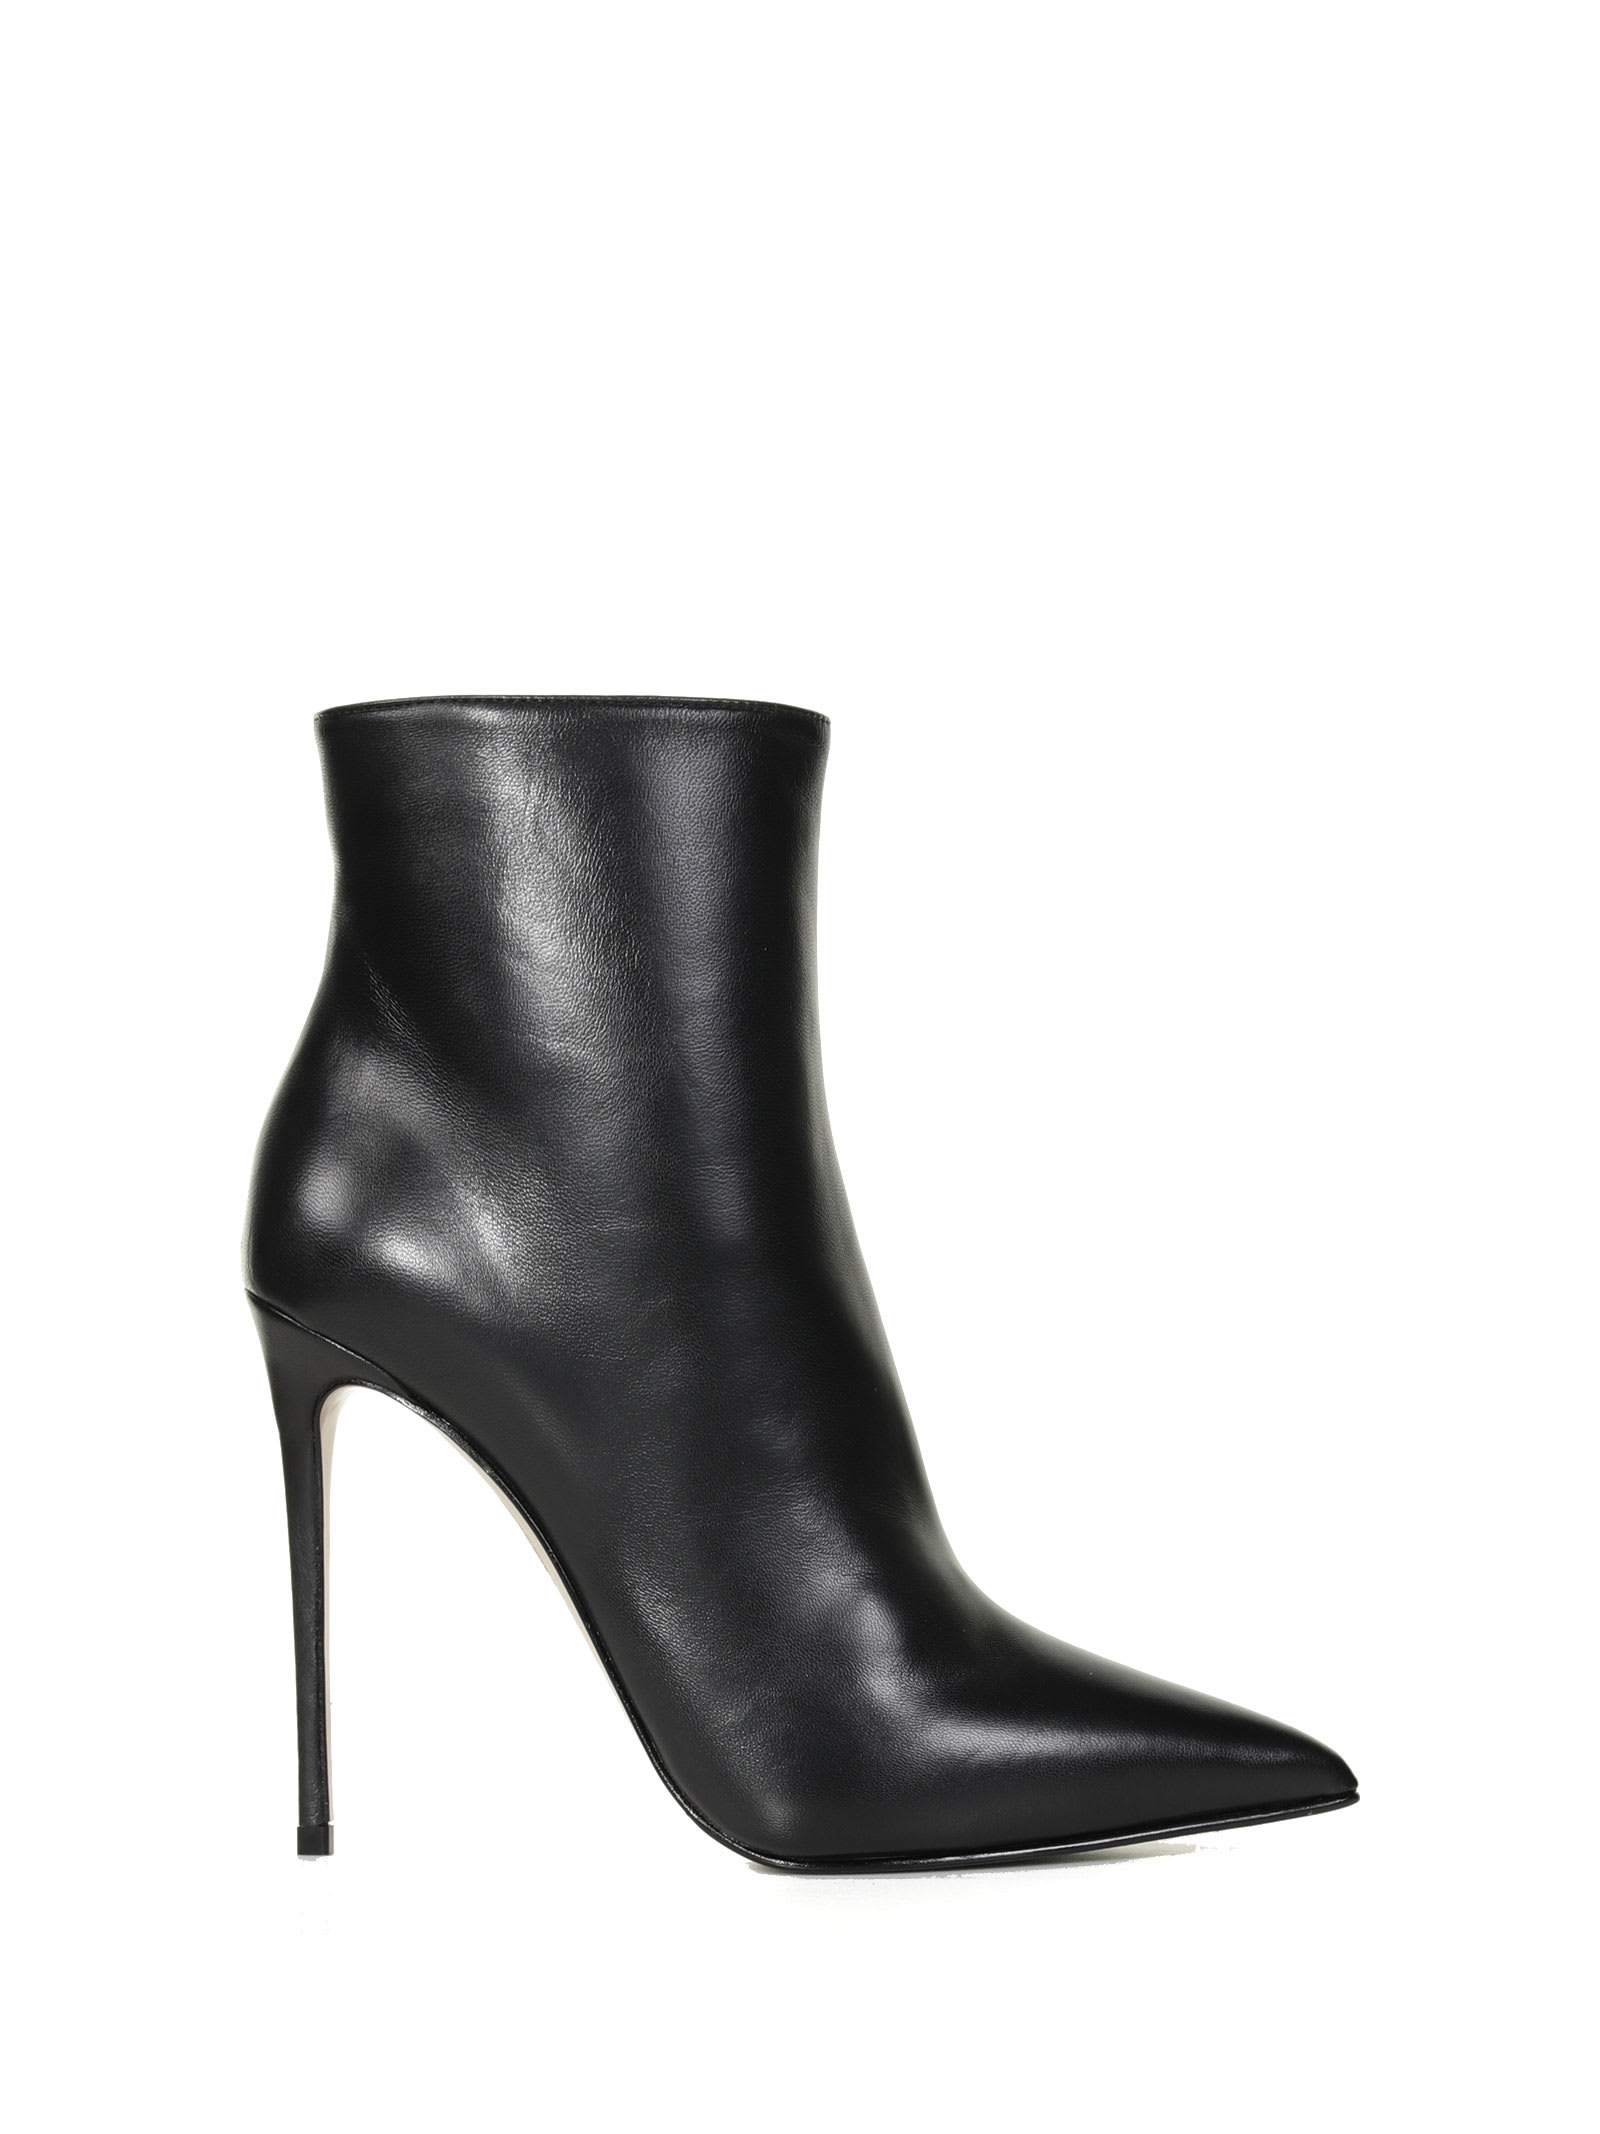 Le Silla Eva Leather Ankle Boot